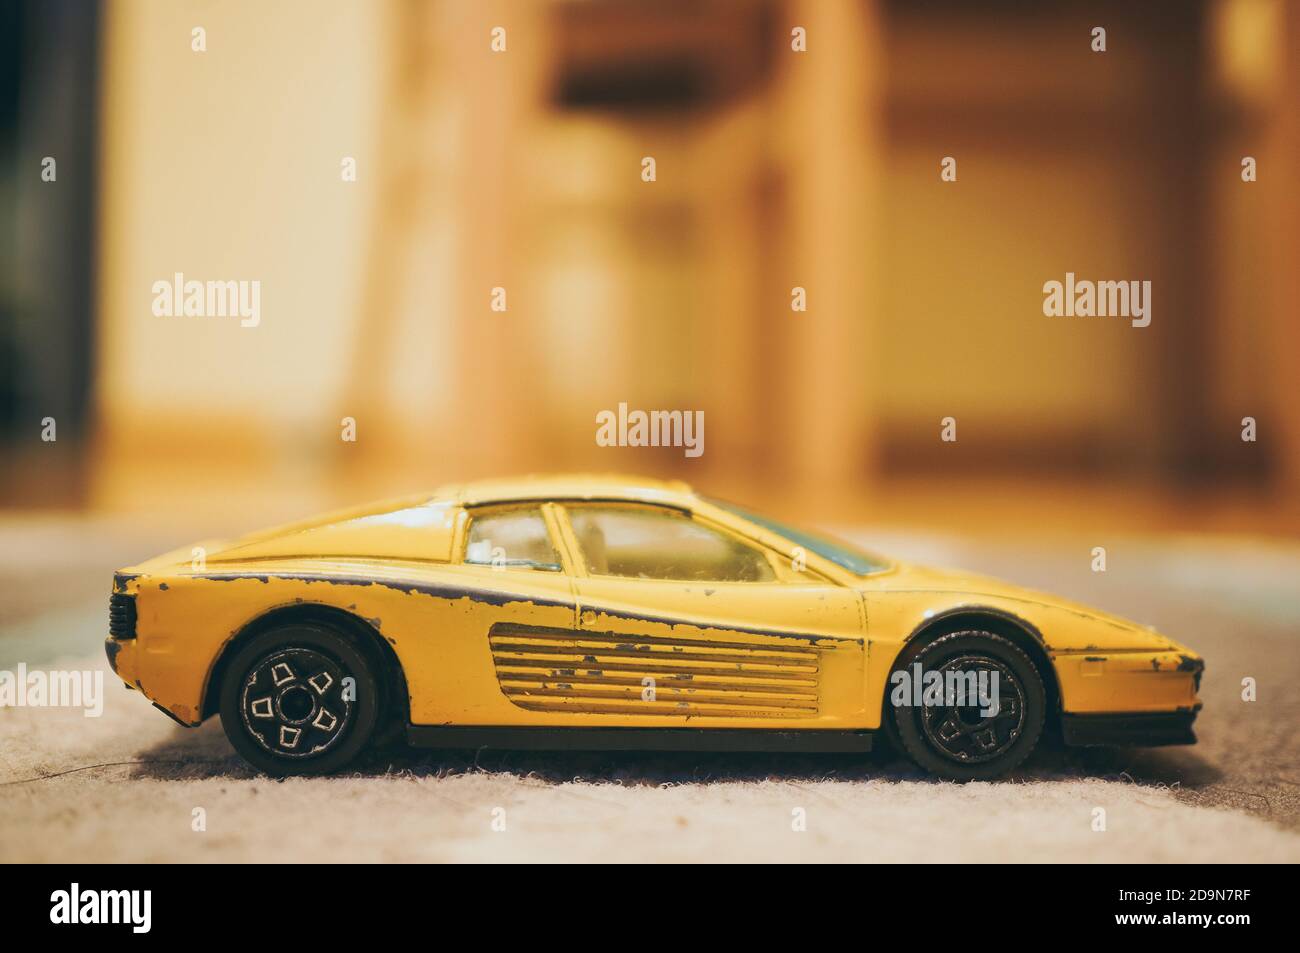 POZNAN, POLOGNE - 13 novembre 2016: Jaune Bburago jouet Ferrari modèle  voiture sur un sol de tapis Photo Stock - Alamy